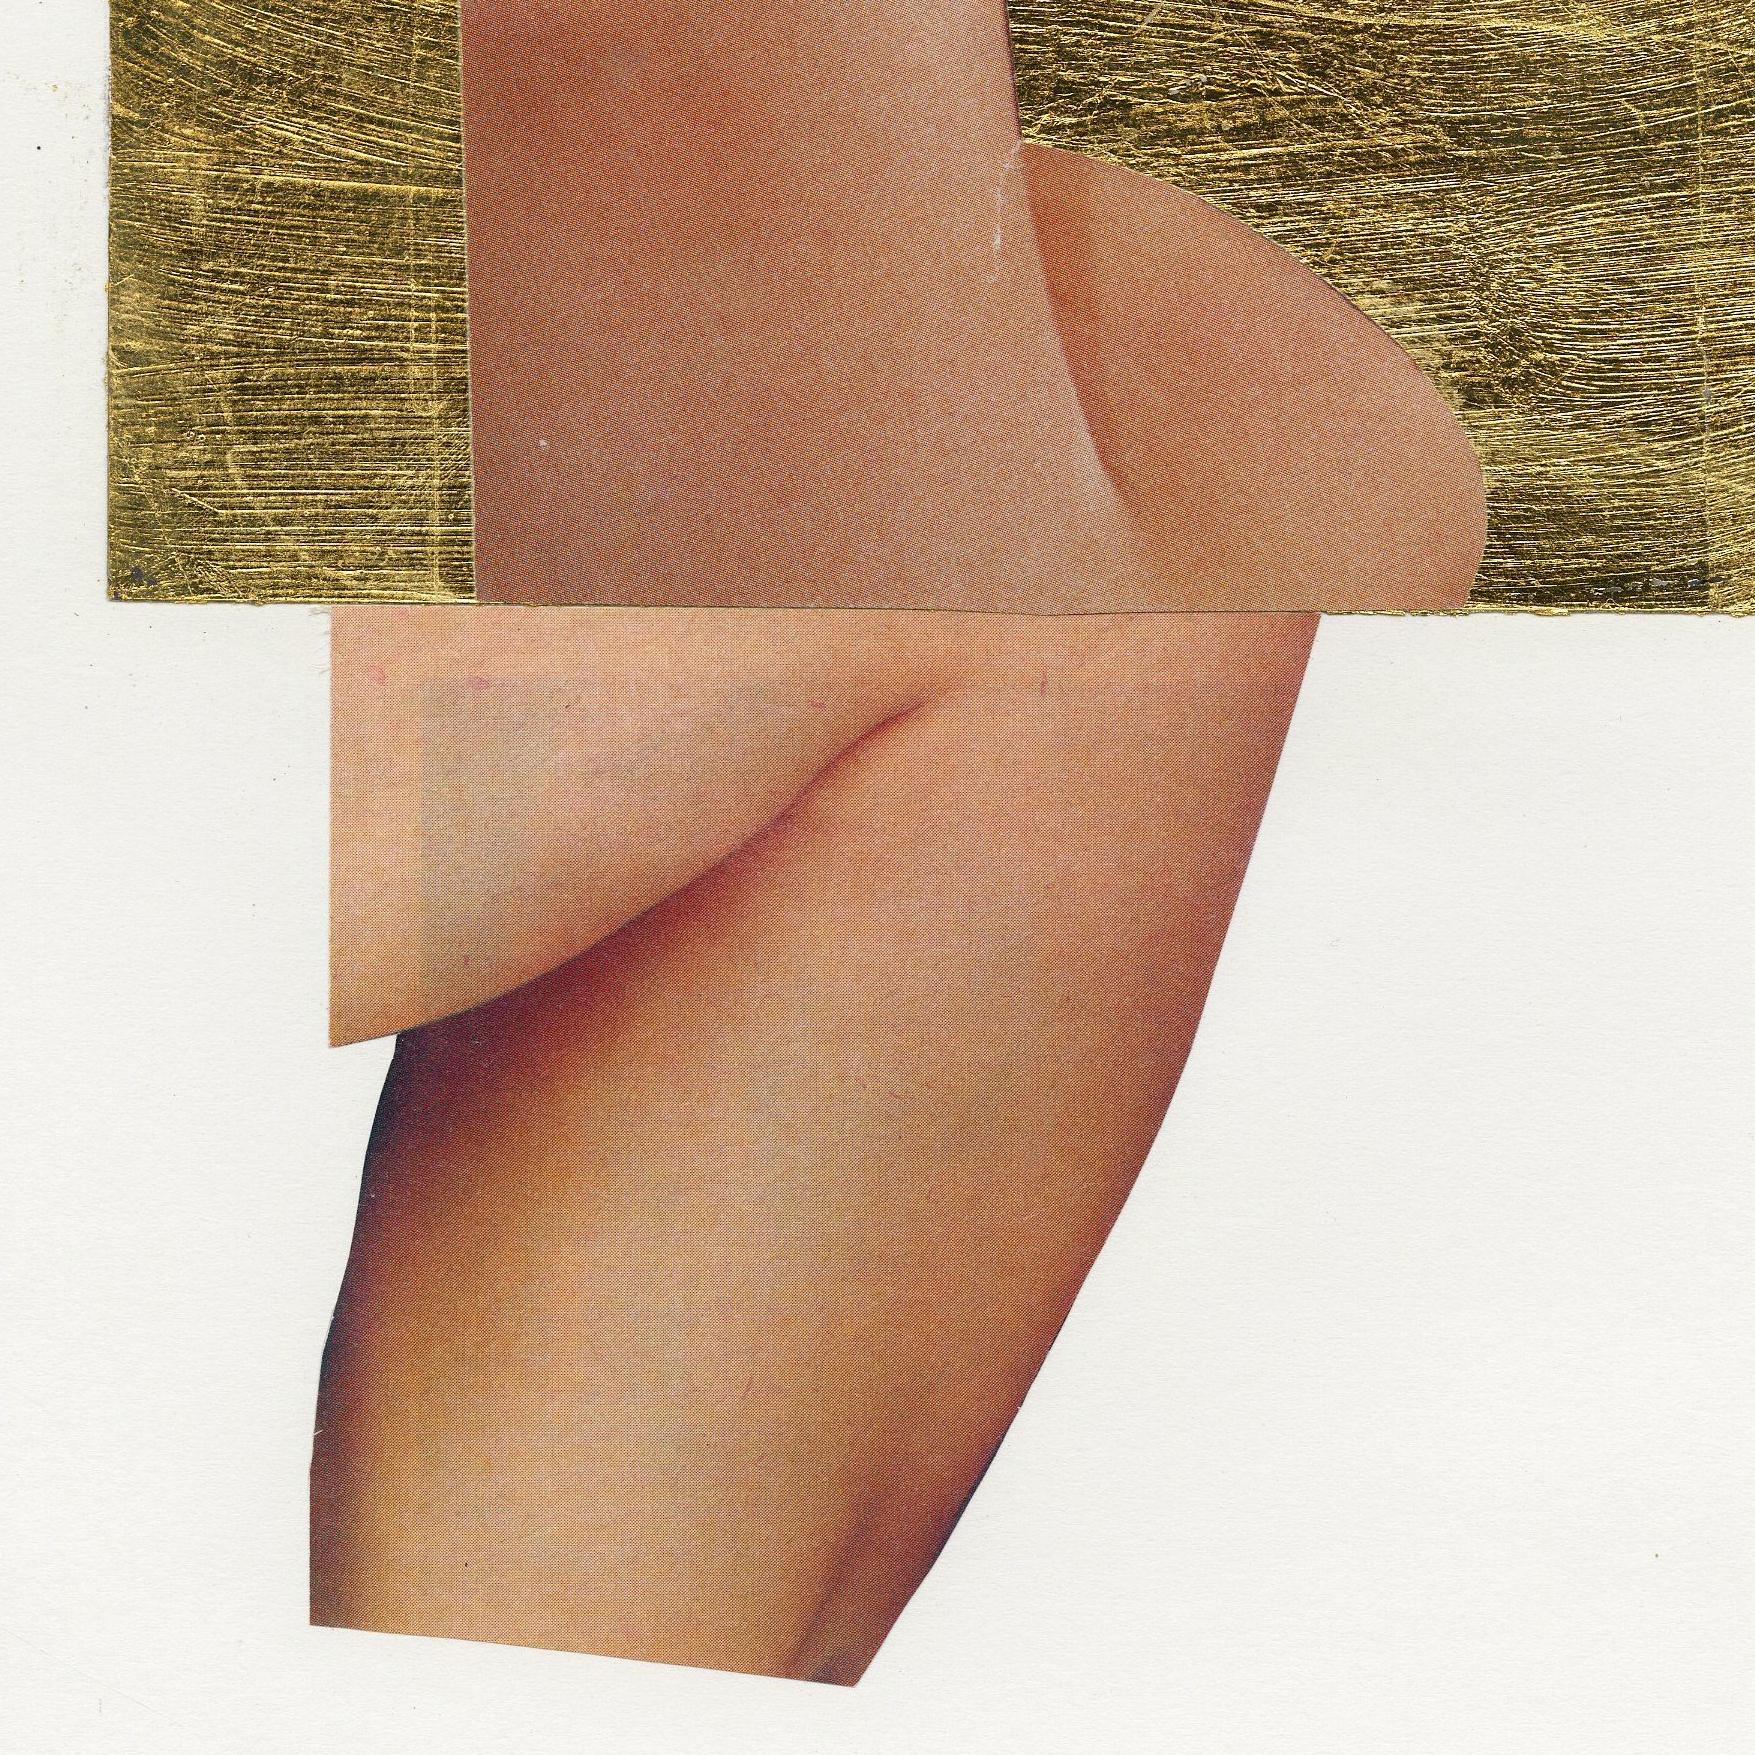 Mischtechnik-Collage auf Trägerpapier. Blattgold, Zeitschrift und Cyanotypie-Fotografie. 

Bild: 11 x 6 1/4